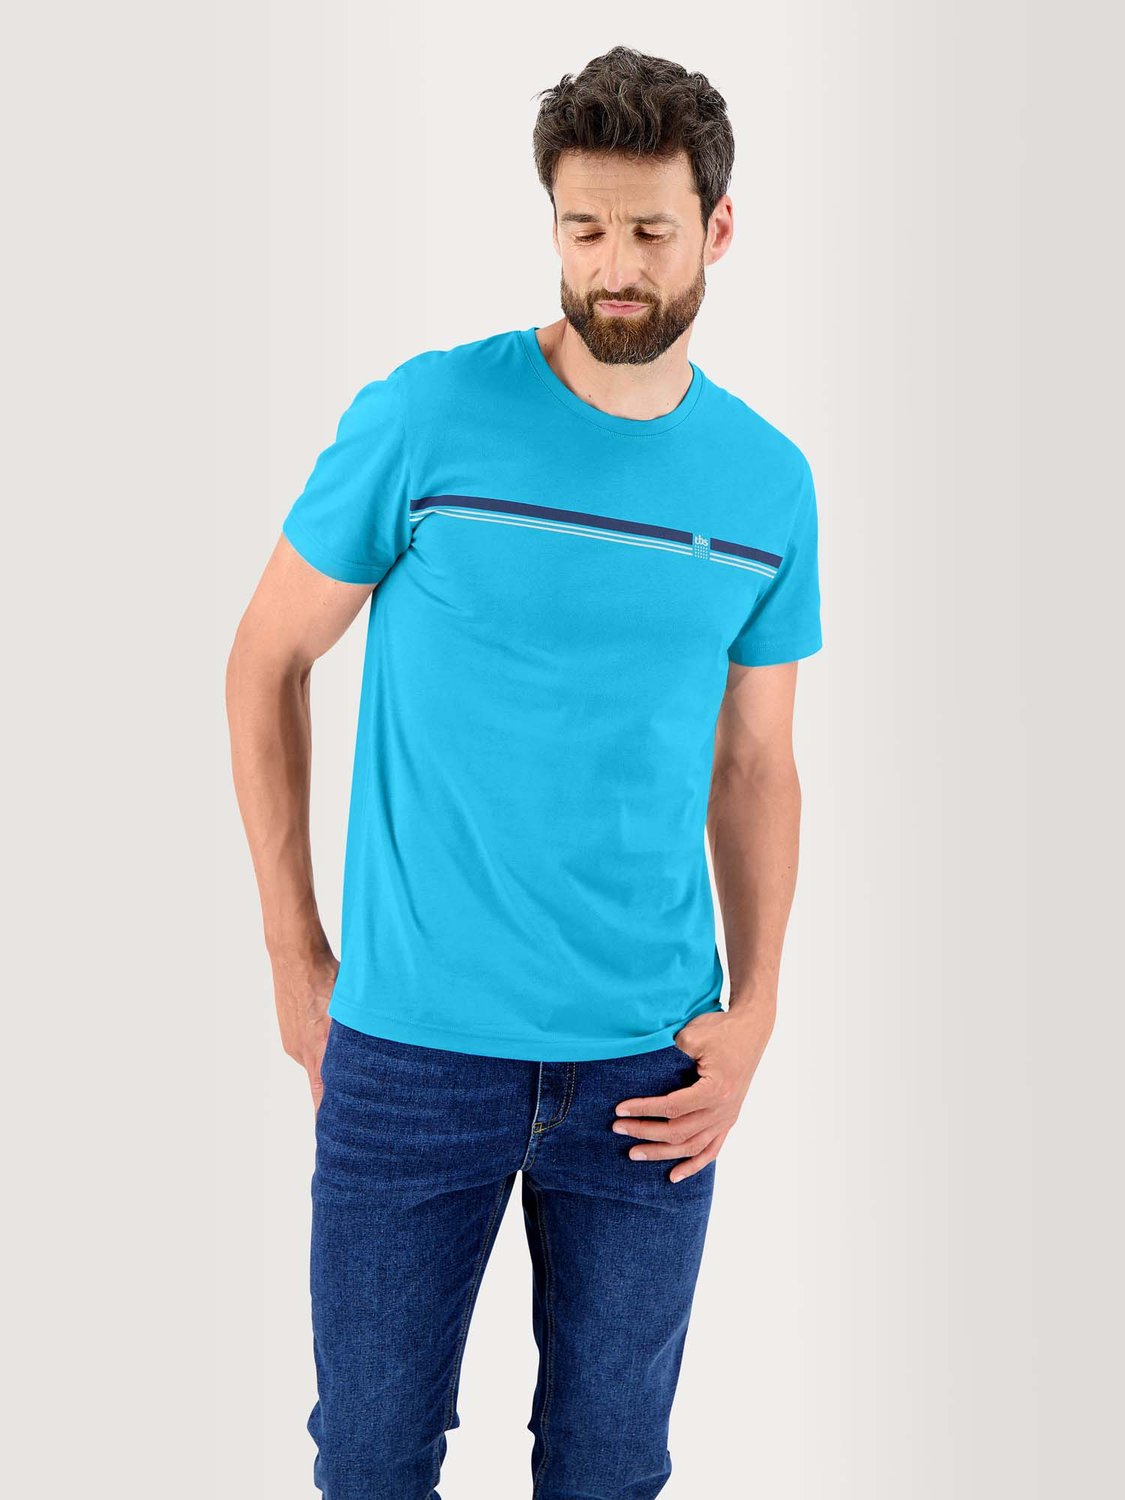 Tee Shirt Homme Manches Courtes Coton Biologique Turquoise